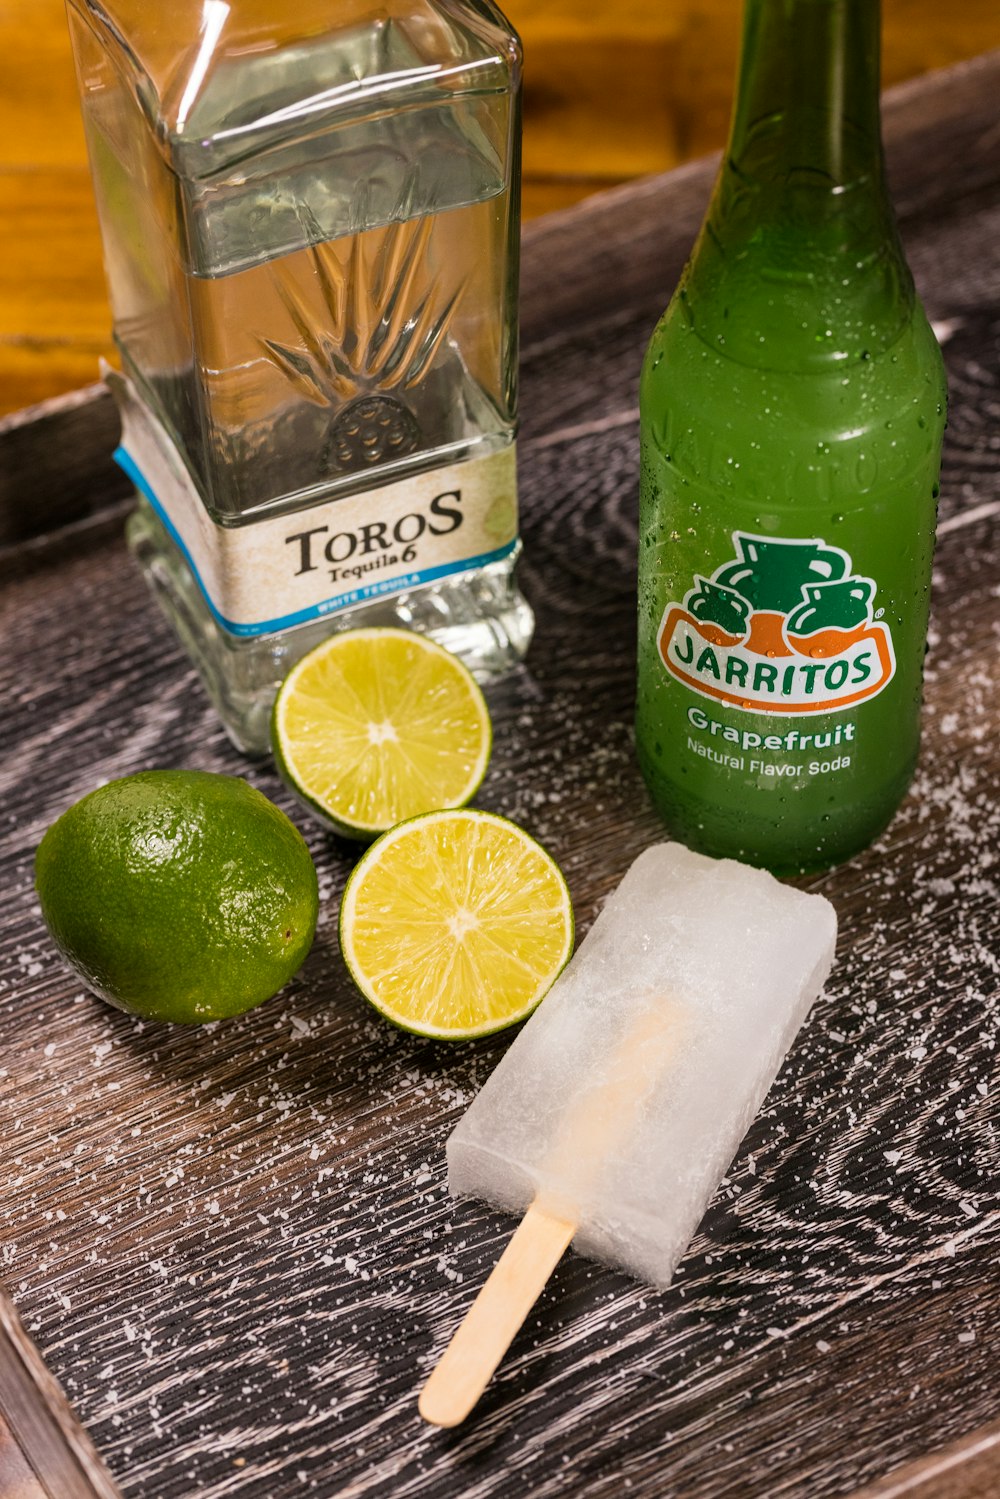 grün-weiß etikettierte Flasche neben geschnittener Zitrone